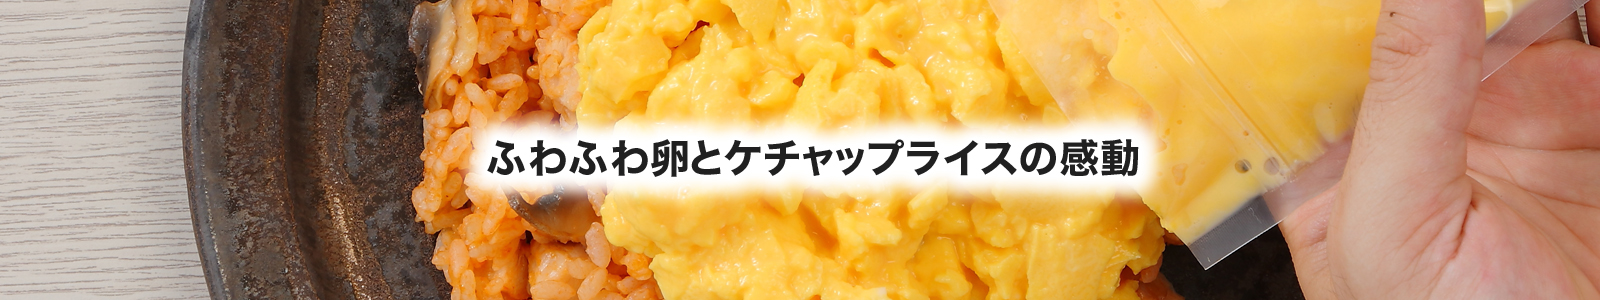 【湯煎調理レシピ】オムライス